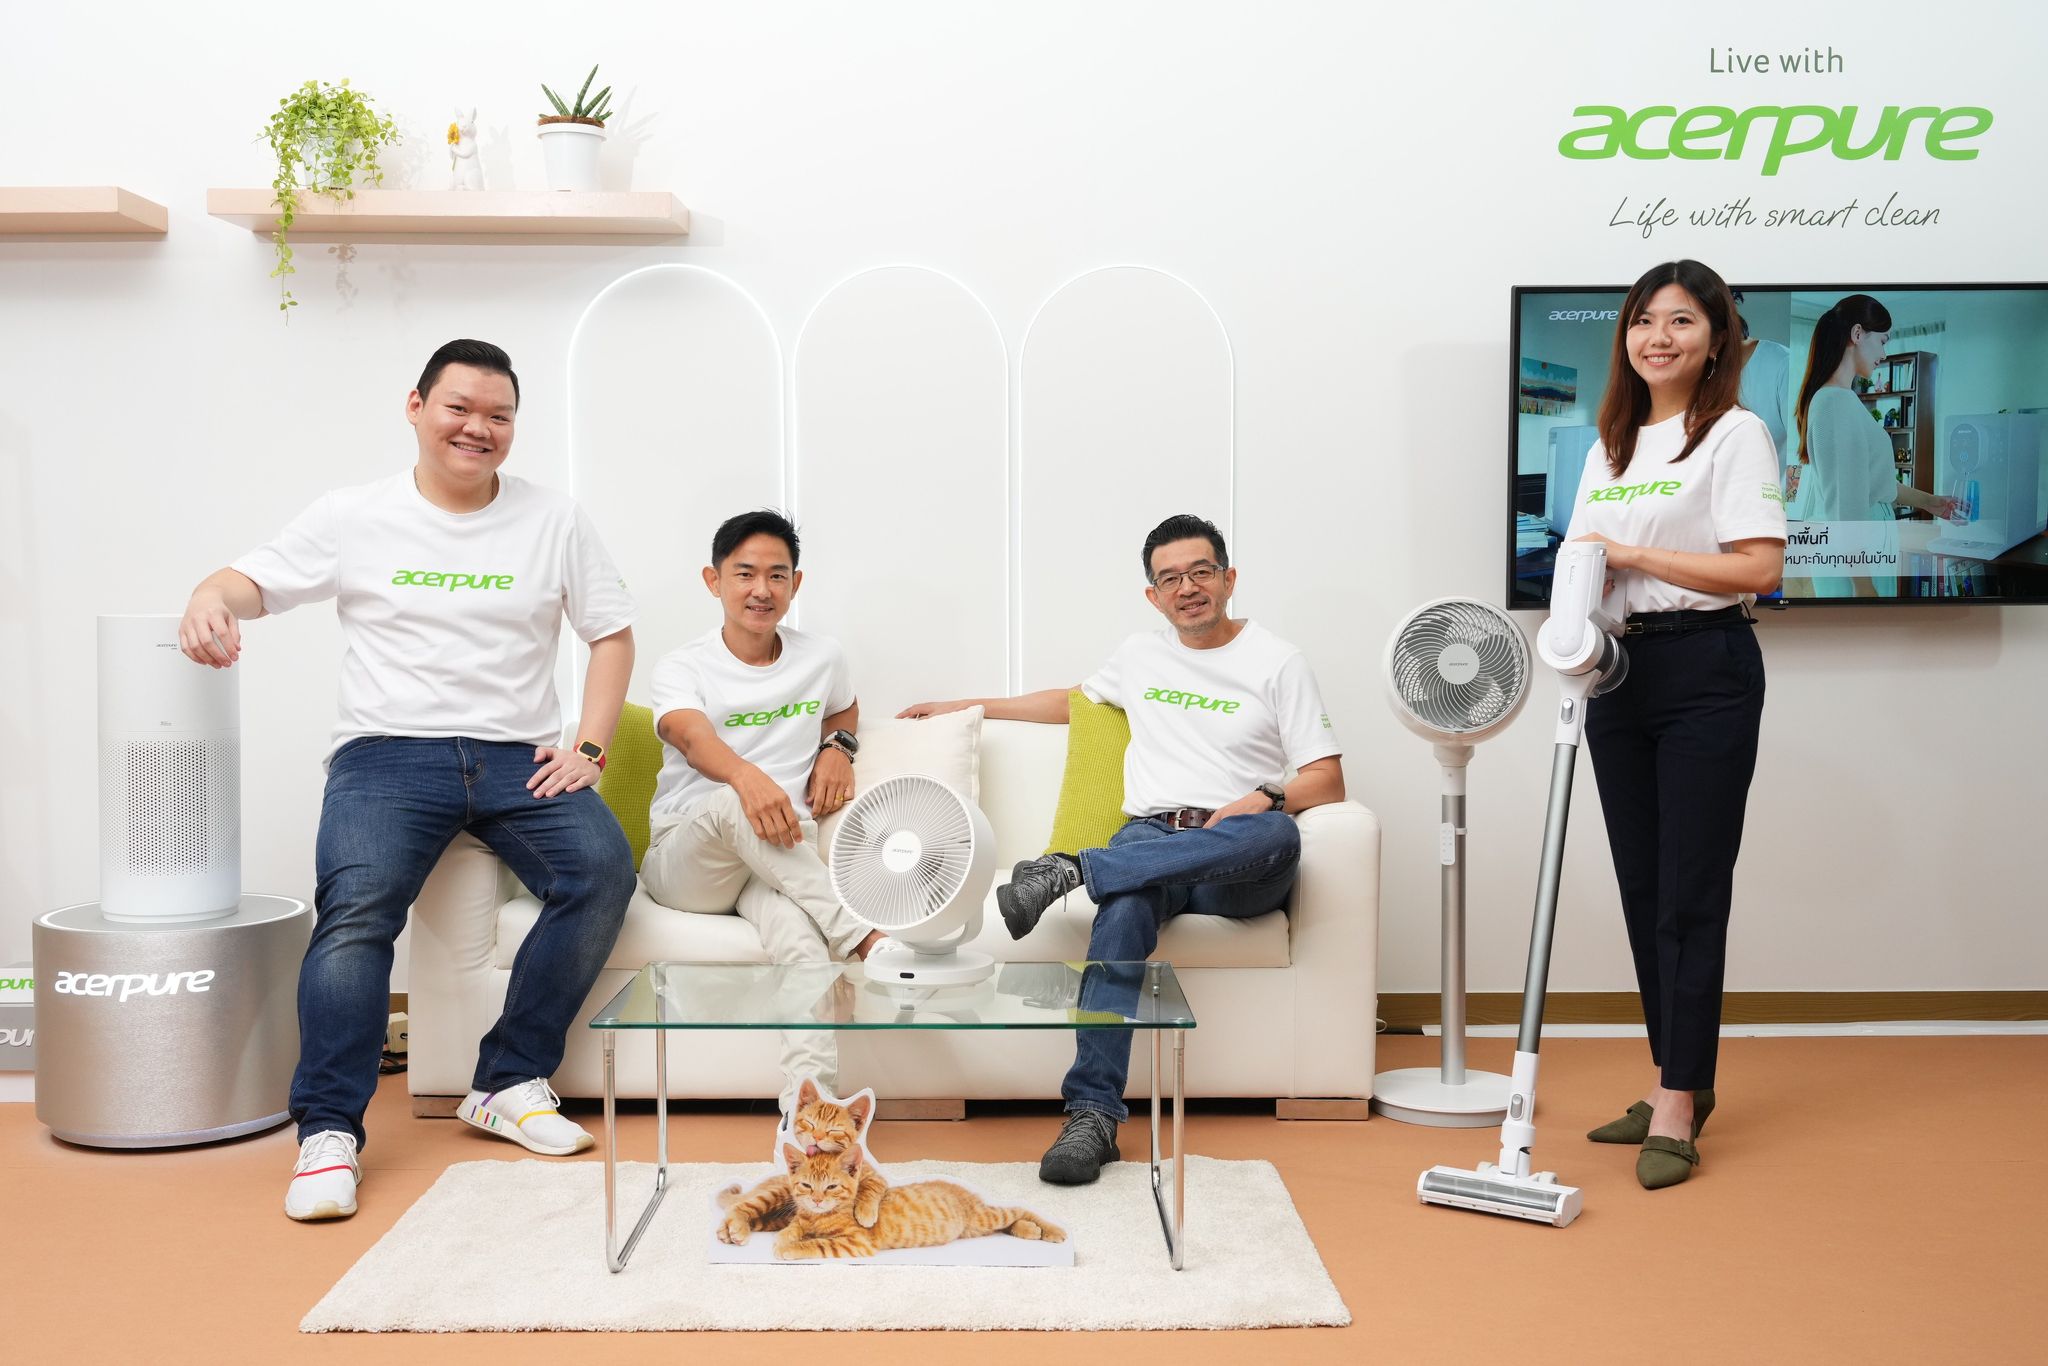 宏碁通过新业务“Acerpure”进军电子生活产品市场，推出滤水器“Acerpure Aqua”，以满足新一代消费者的需求。